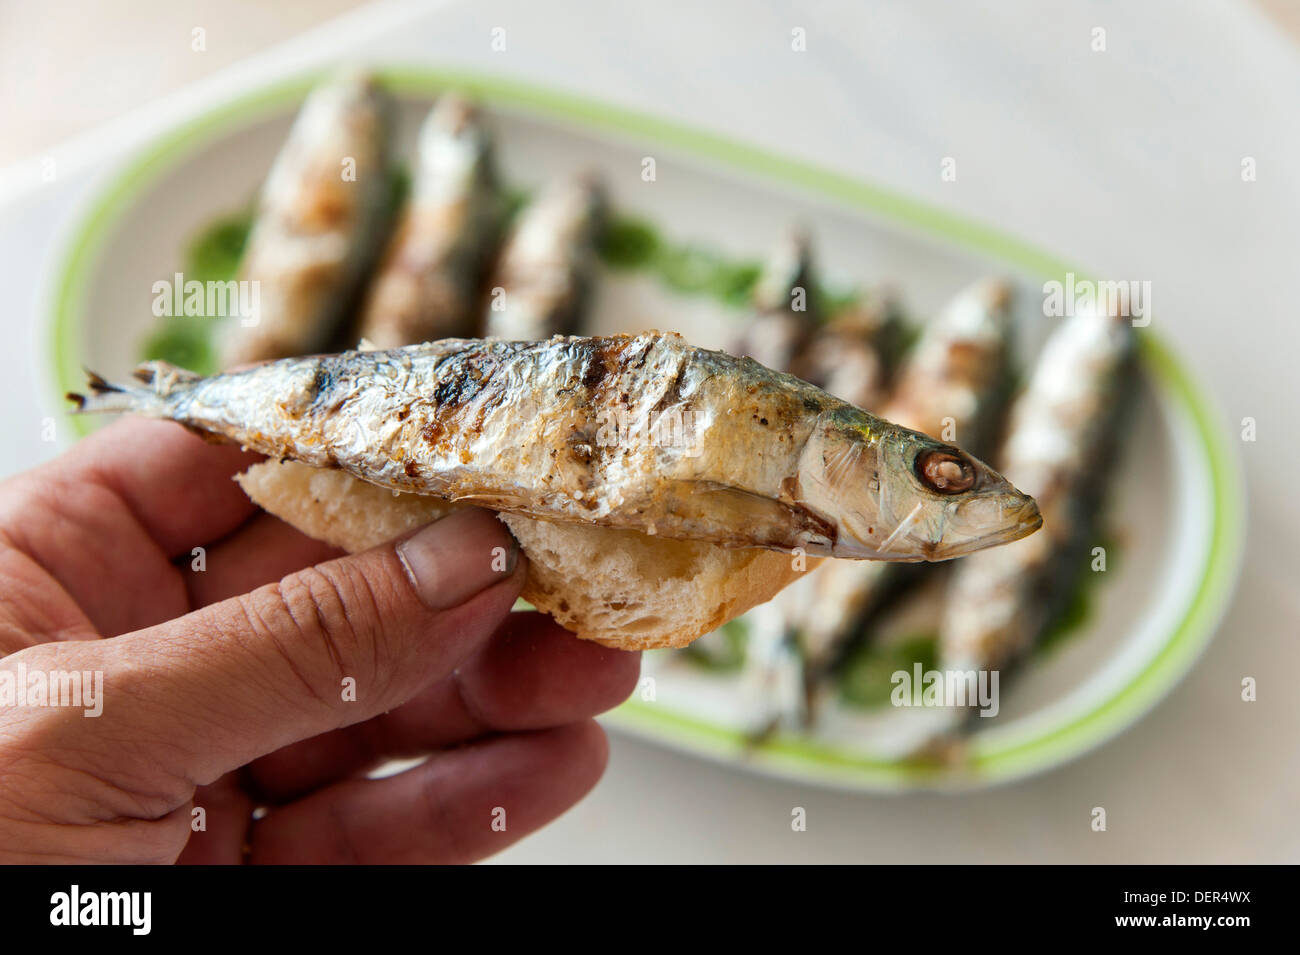 La main des hommes est titulaire d morceau de pain grillé avec du sardine (Sardina pilchardus) . Plaque avec 7 sardines en arrière-plan Banque D'Images